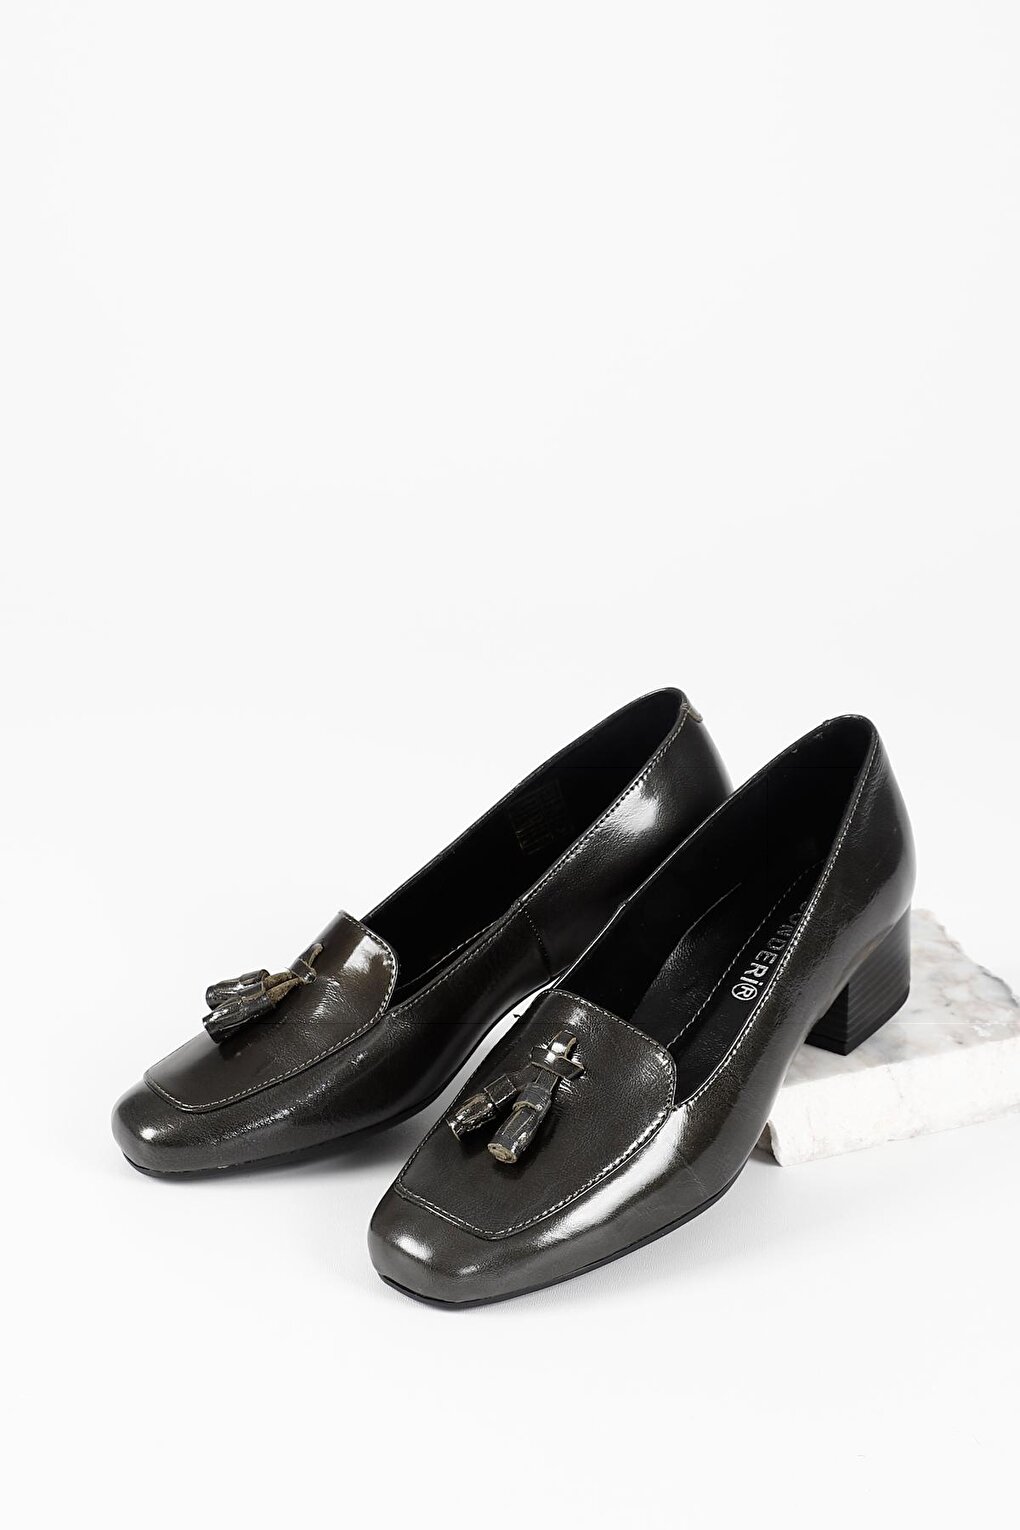 СЕРЫЕ женские туфли из натуральной кожи с тупым носком, на коротком толстом каблуке и с кисточками 13313 GÖNDERİ(R) rosenberg r 360005 серый